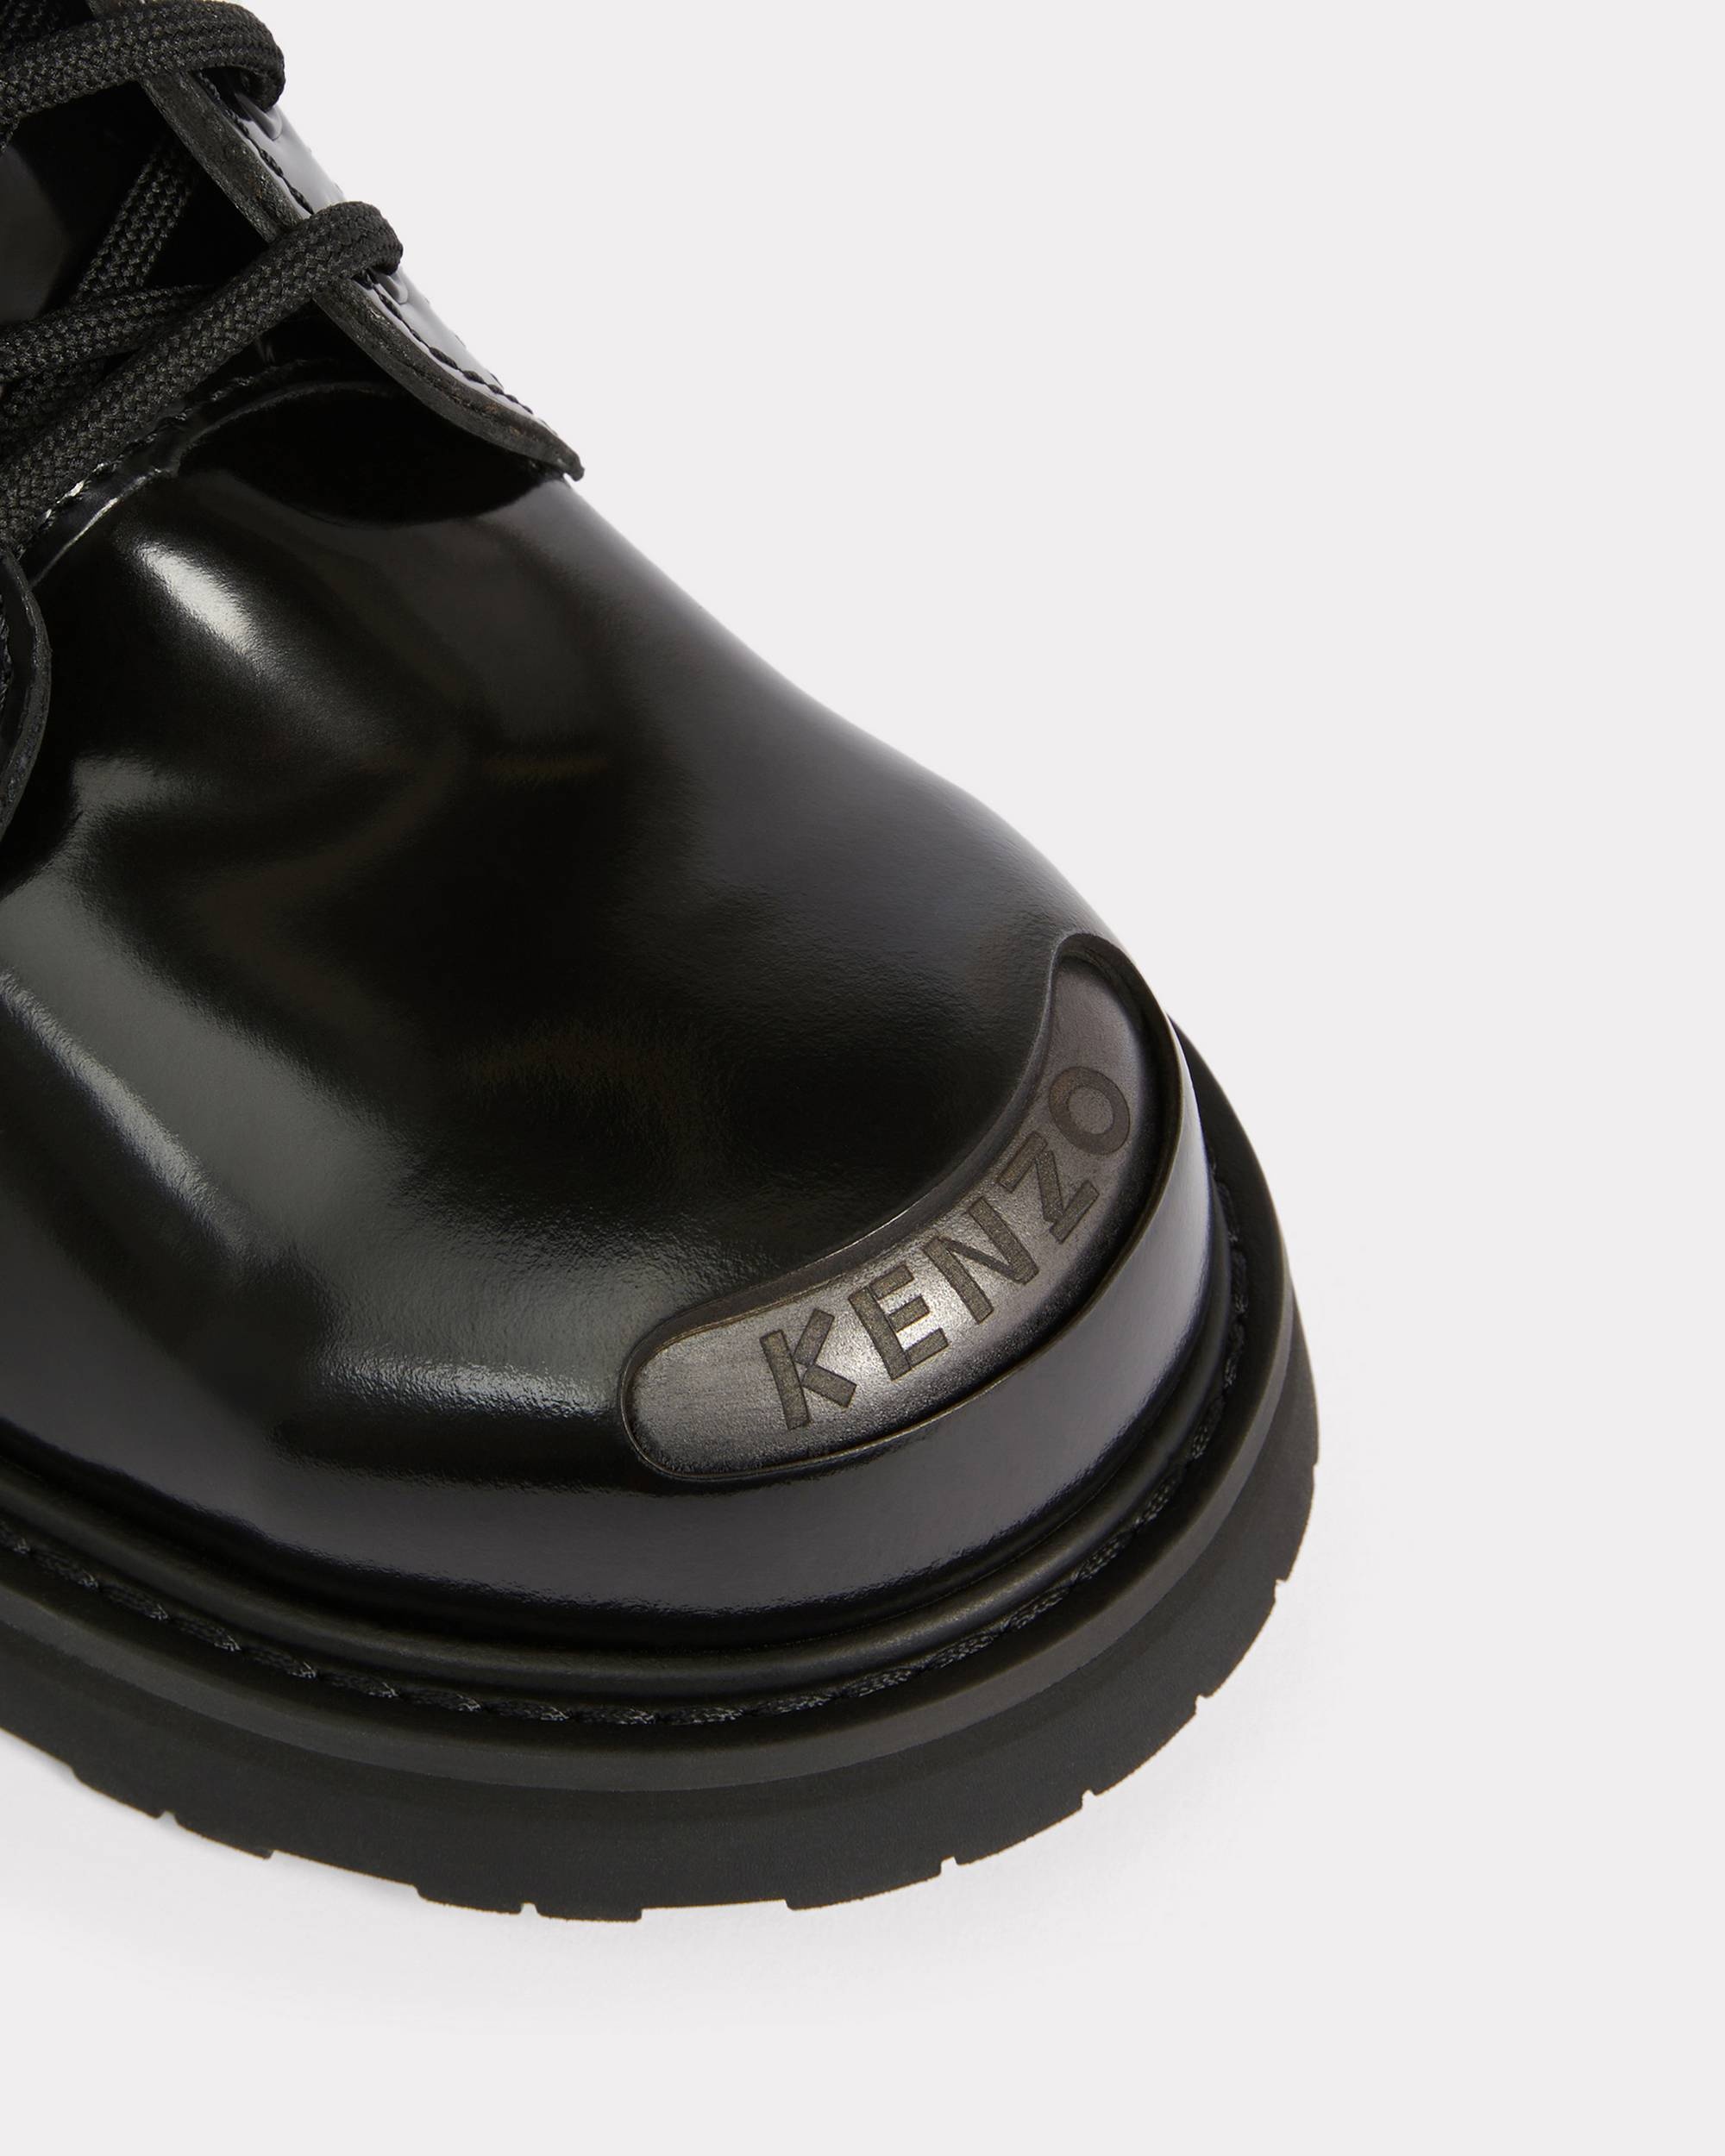 KENZOSMILE lace-up boots - 4